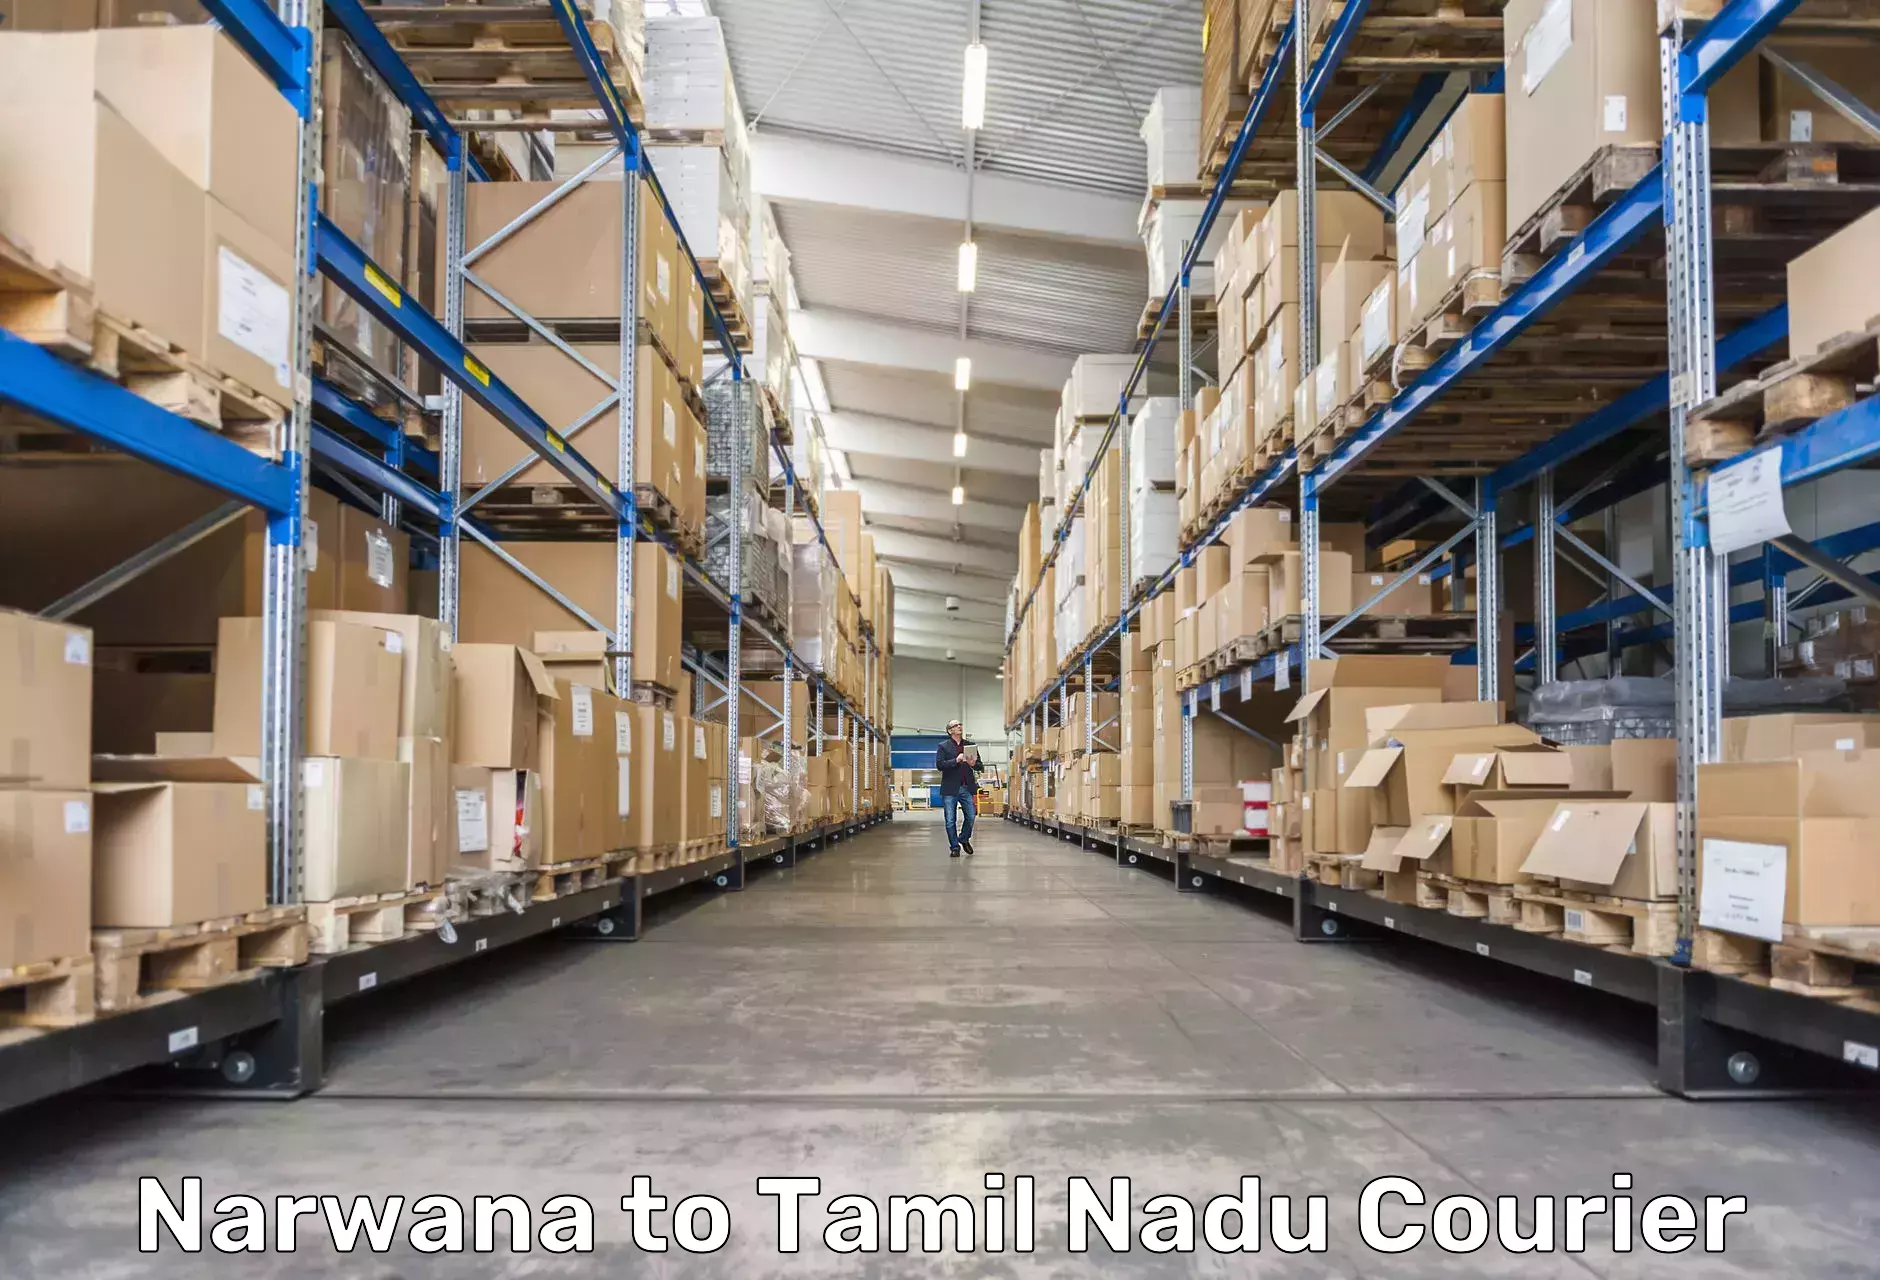 Premium courier services Narwana to Tamil Nadu